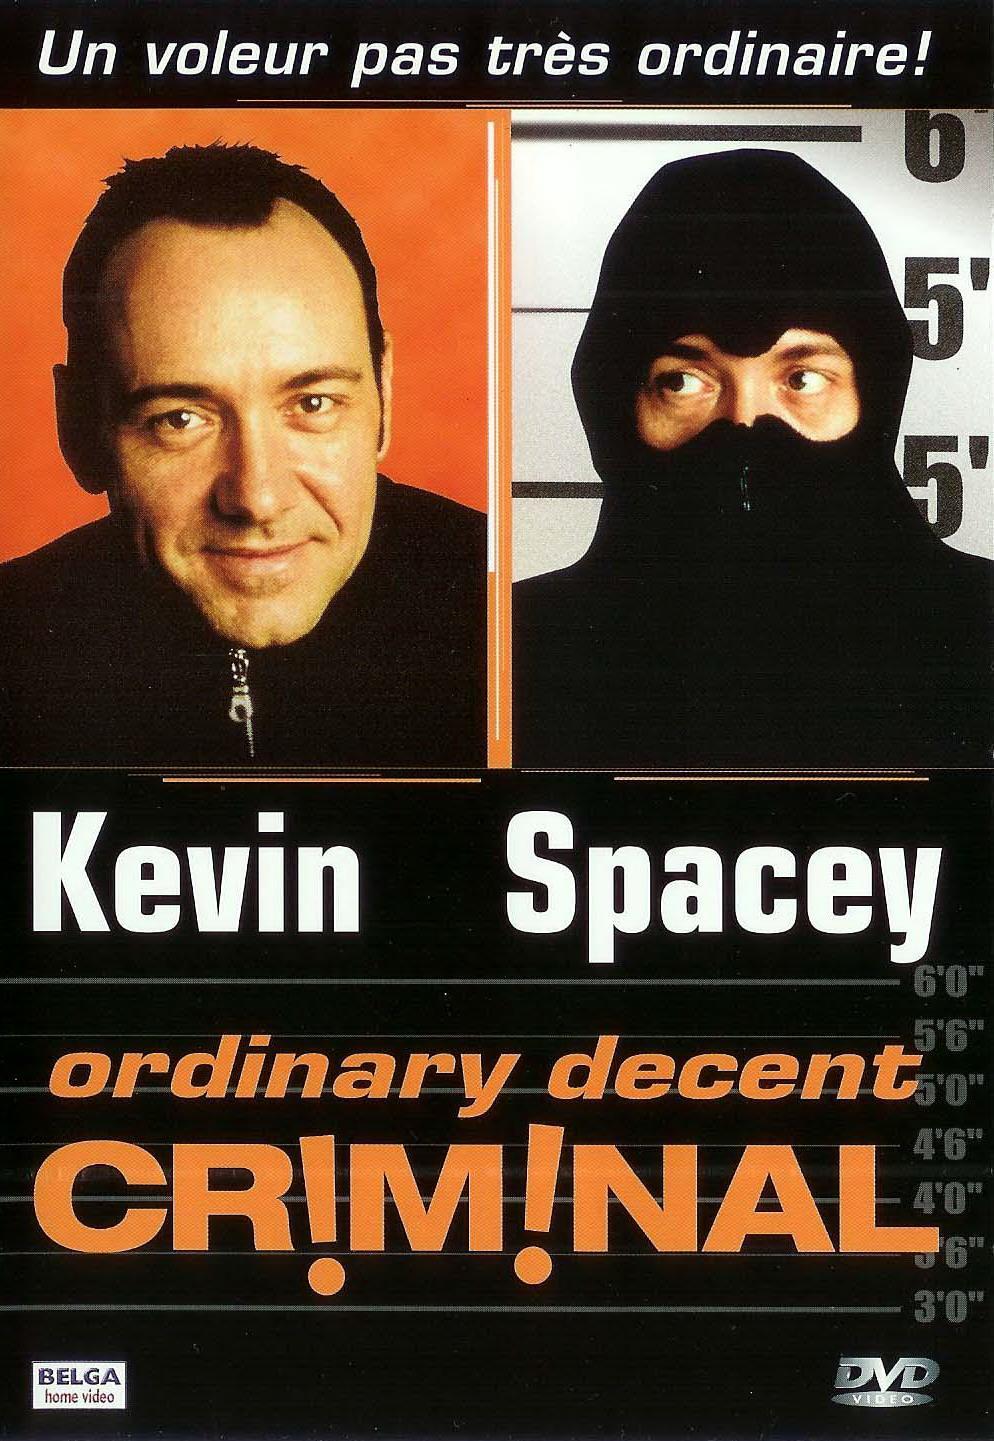 Постер фильма Обыкновенный преступник | Ordinary Decent Criminal